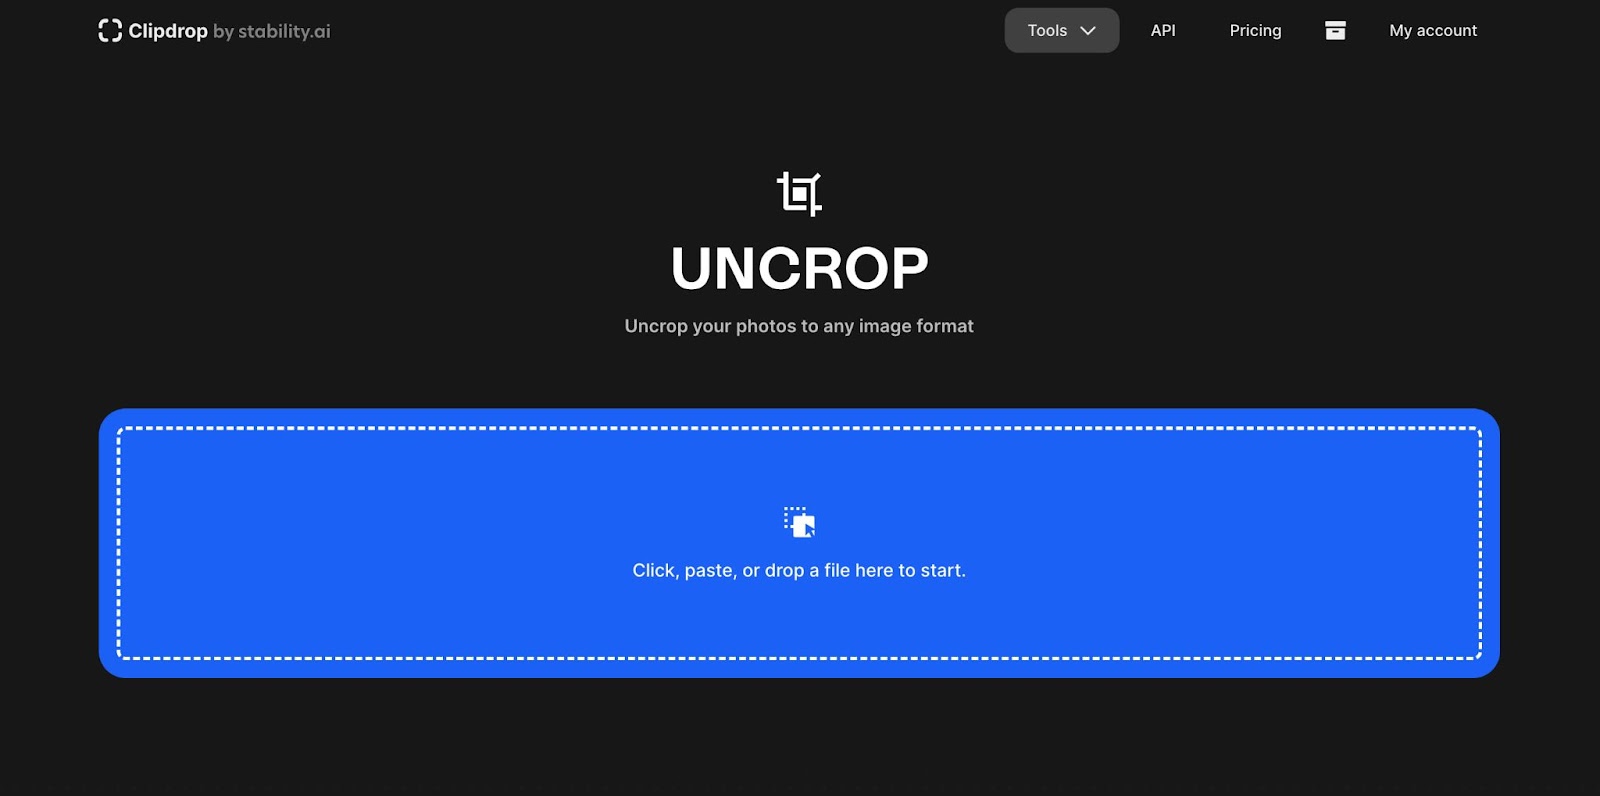 clipdrop undrop homepage